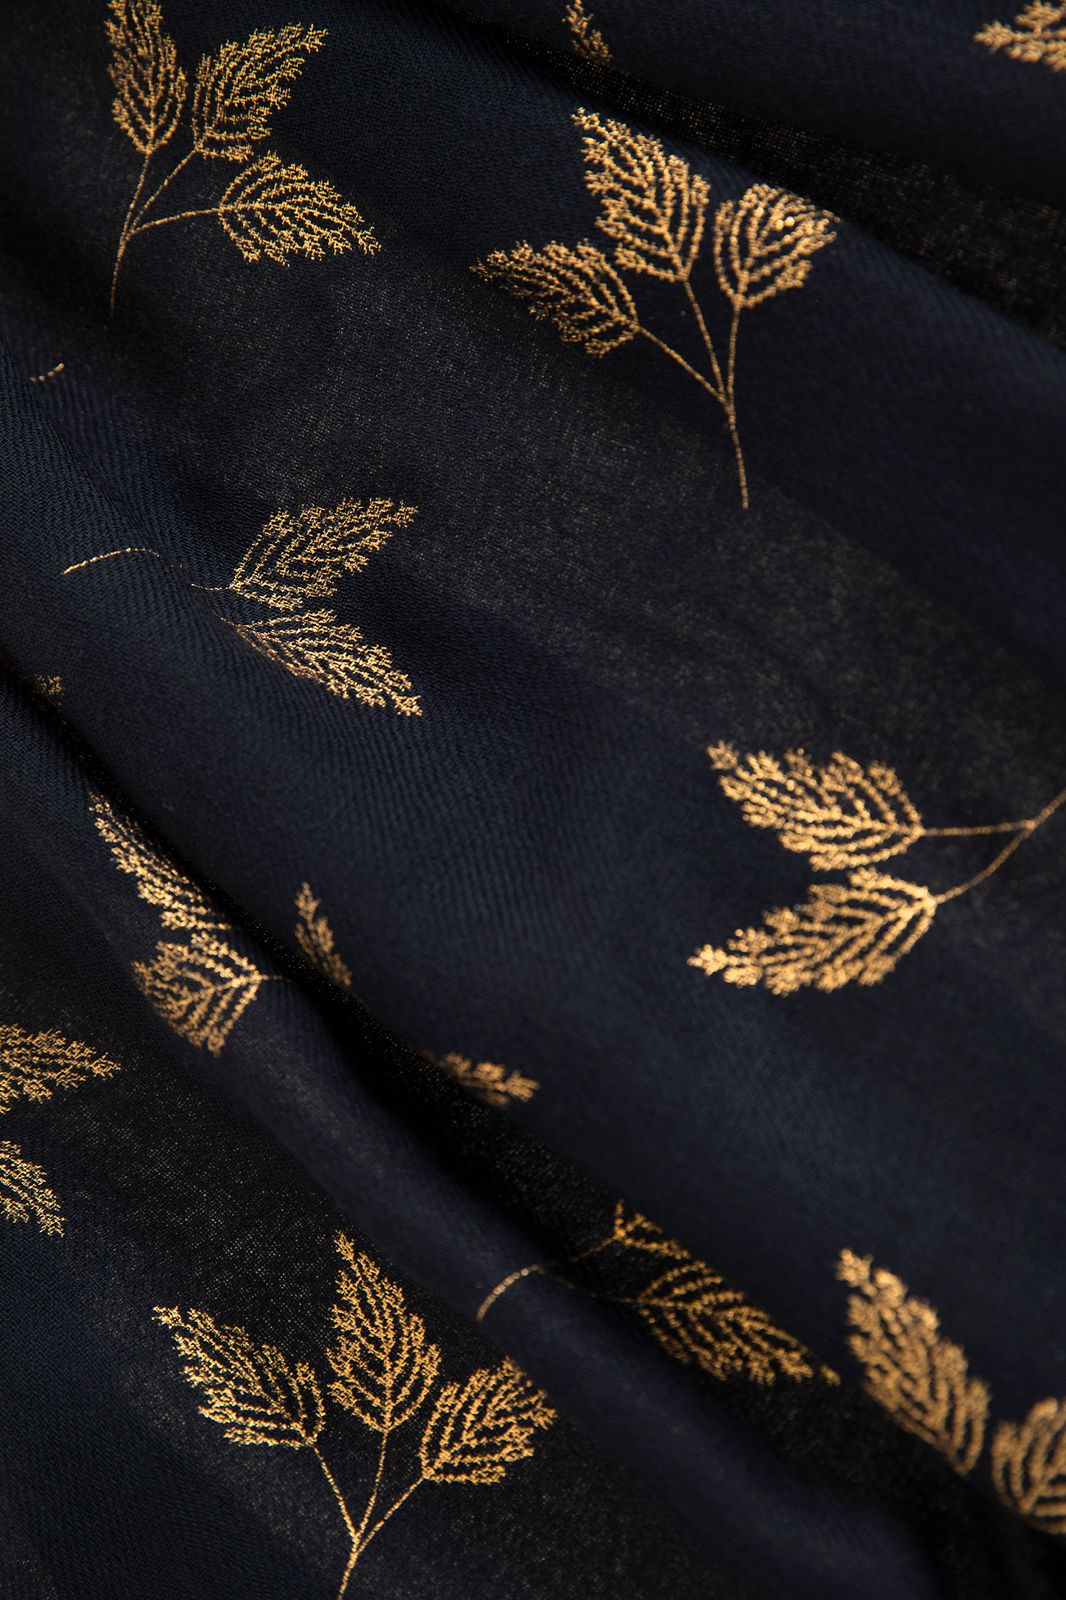 blok Beroemdheid aankleden Wollen sjaal met gouden foil print